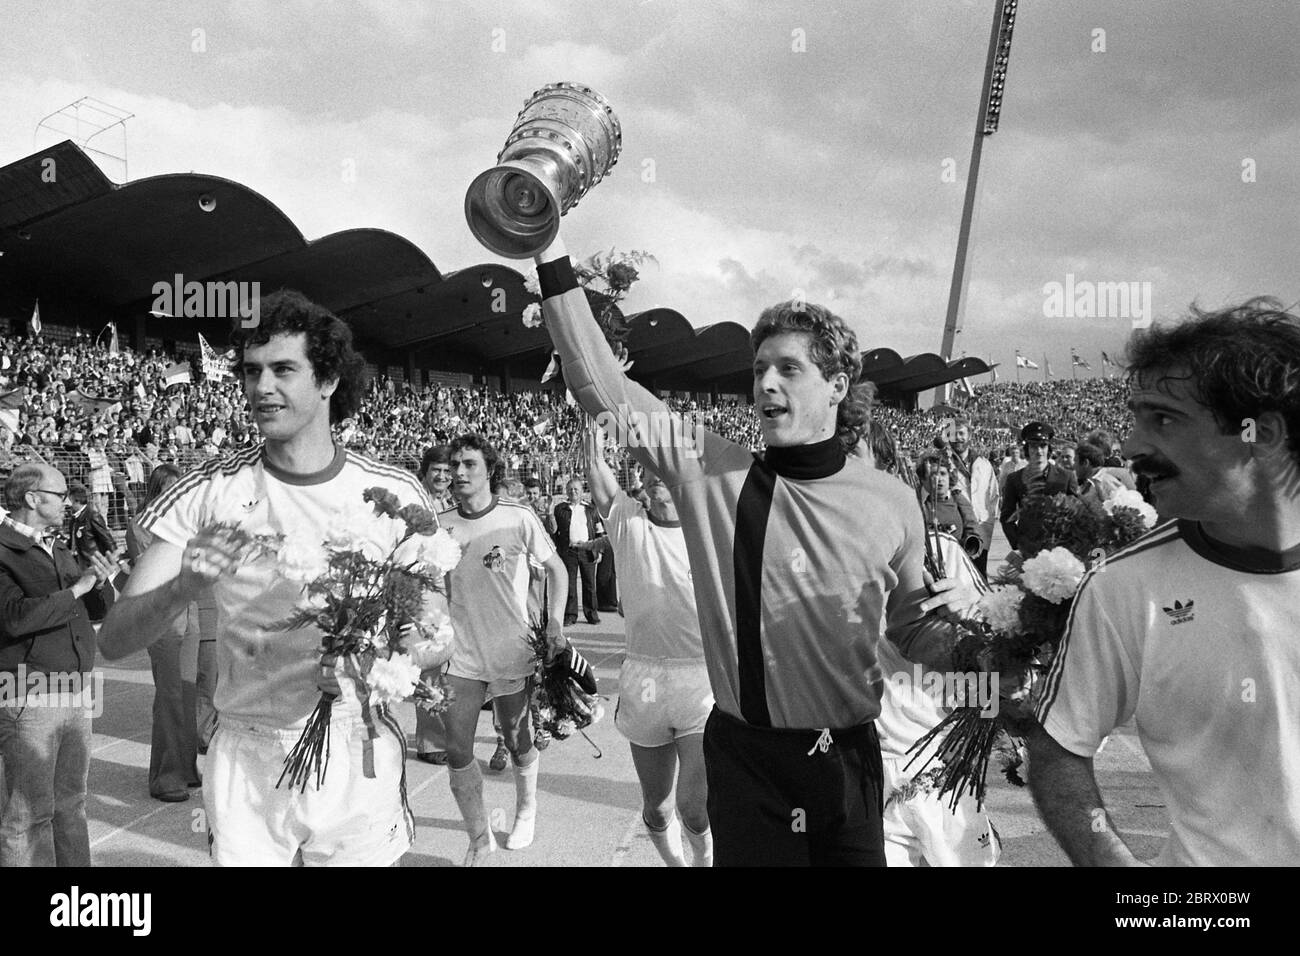 Koelner Kublegende Gerd Strack morì all'età di 64 anni. Foto d'archivio; goalwart Harald toni SCHUMACHER (con), FC Colonia festeggia con il DFB-Pokal, ha lasciato Gerd STRACK con Blumenstrauss, calcio DFB Pokal finale, Hertha BSC Berlino - FC Colonia 1: 1, replay su 30.05.1977. Registrazione SW, | utilizzo in tutto il mondo Foto Stock